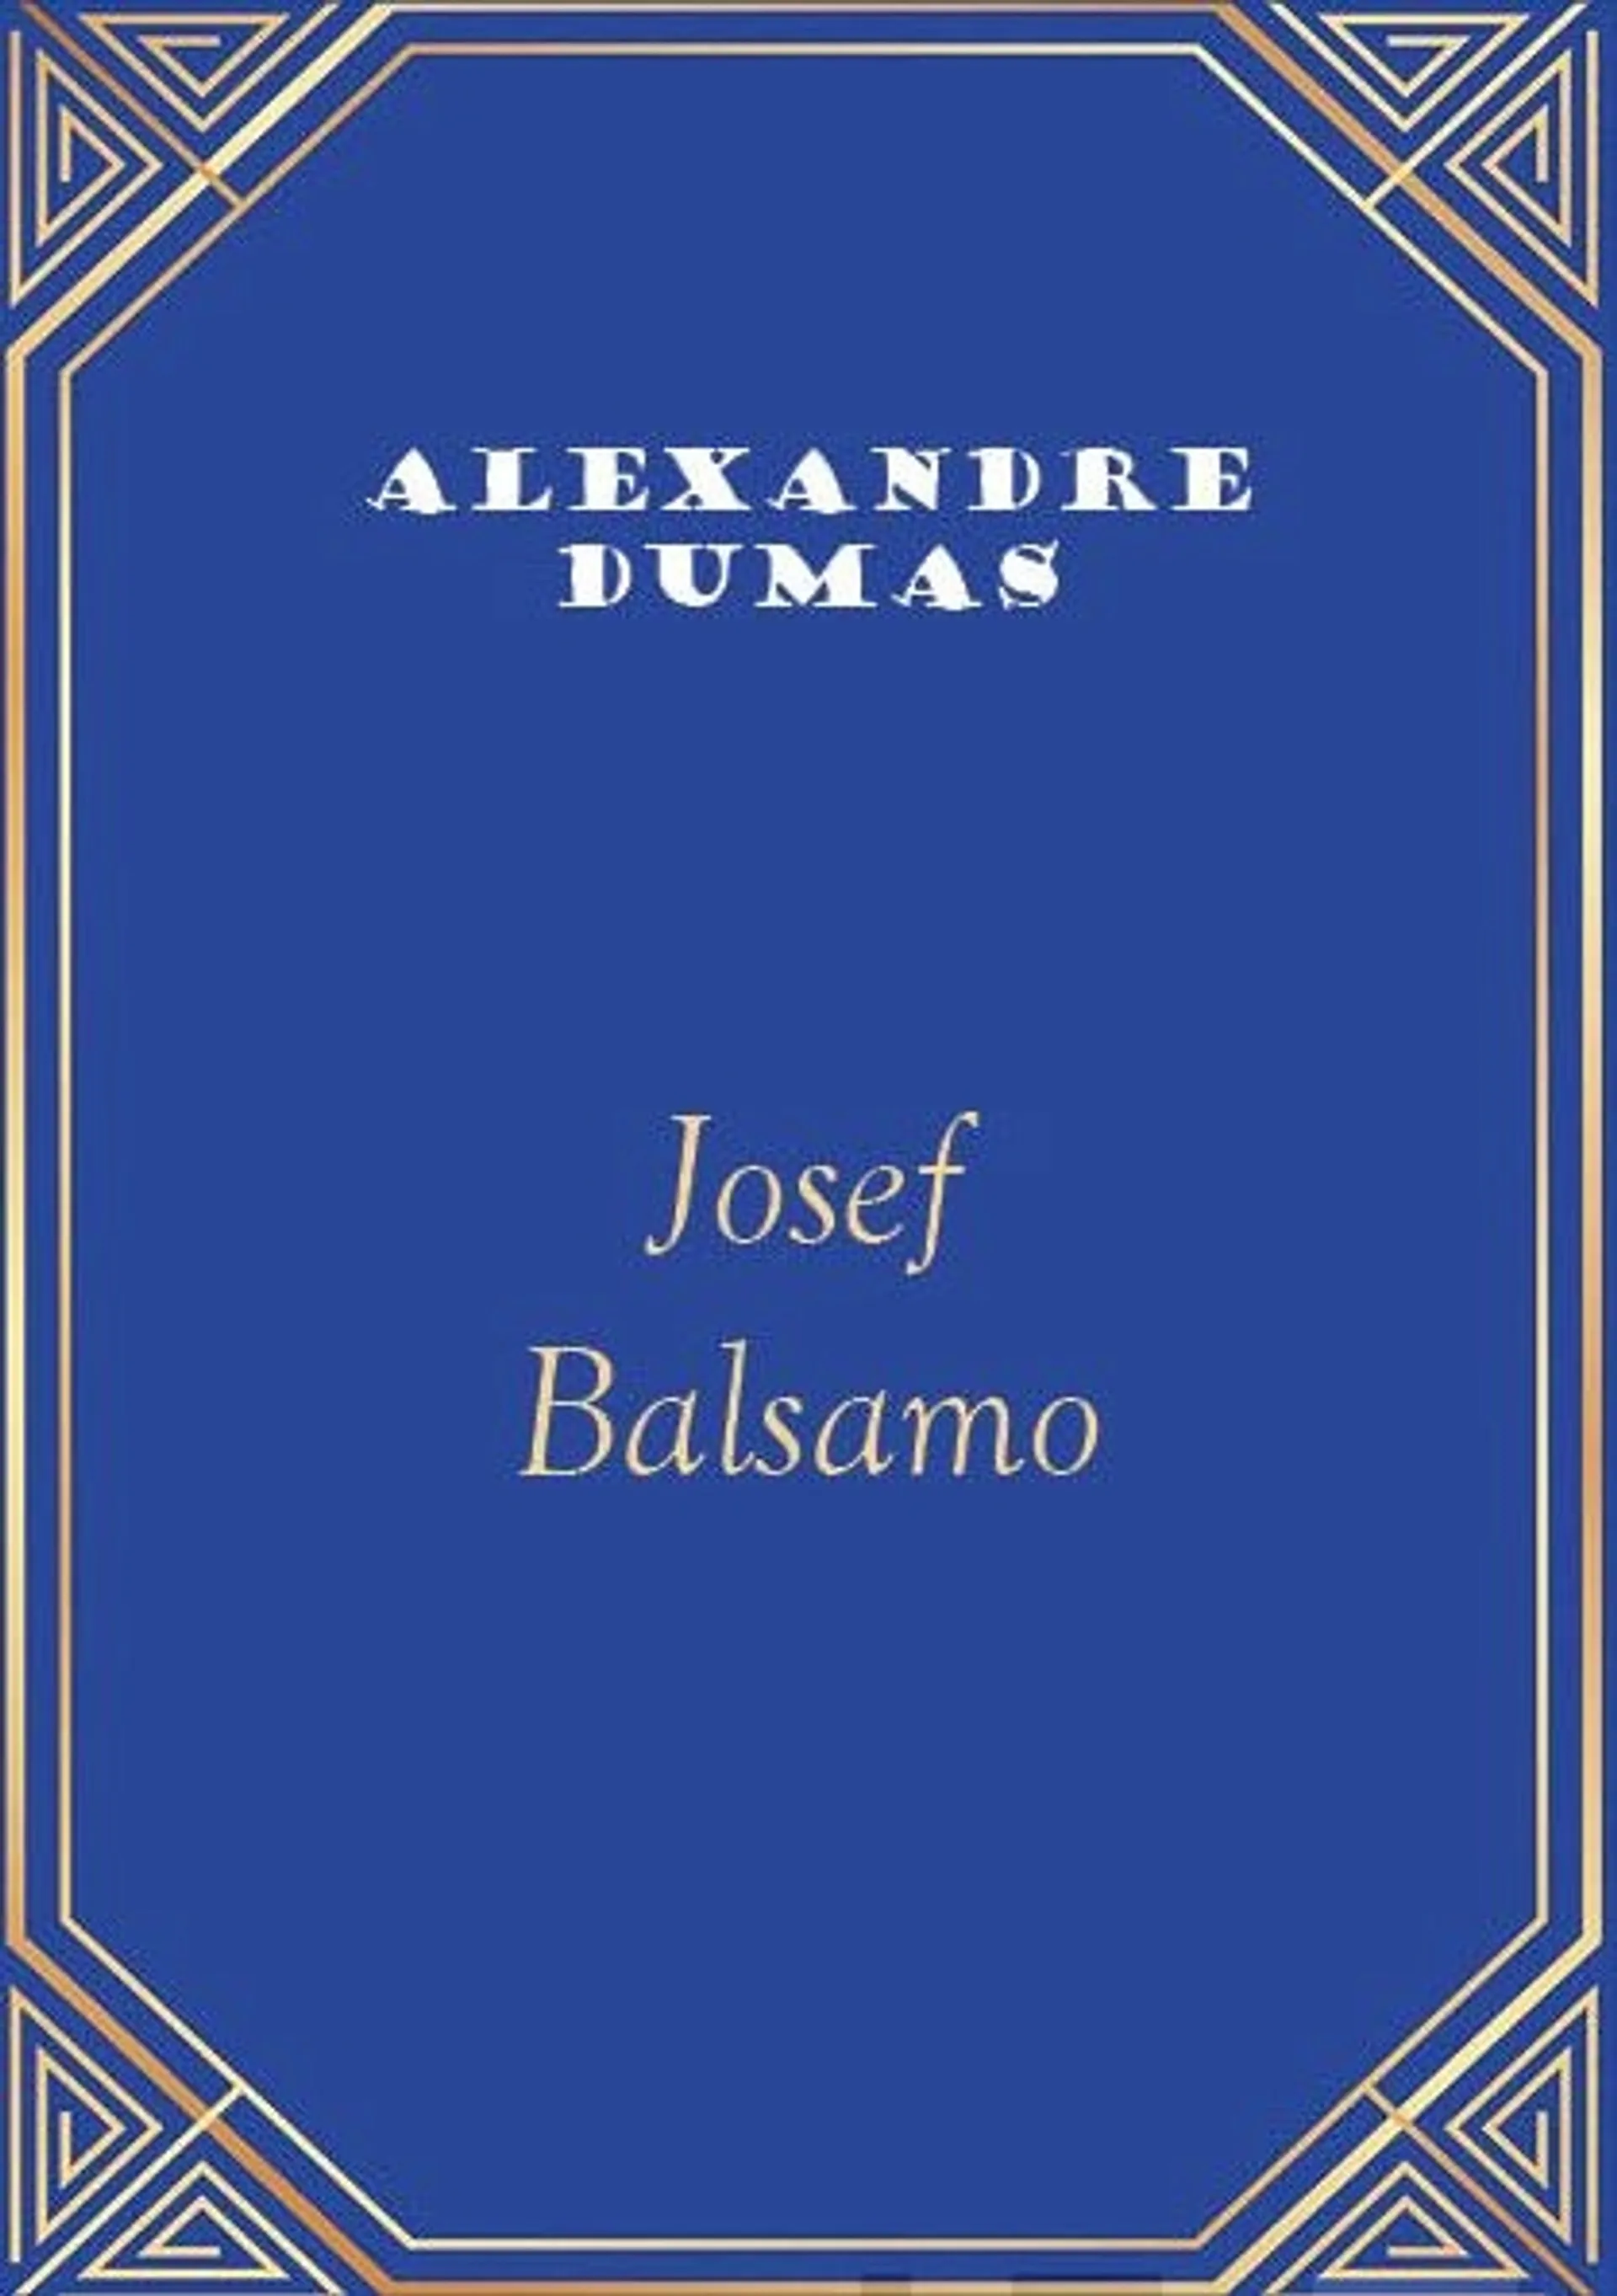 Dumas, Josef Balsamo